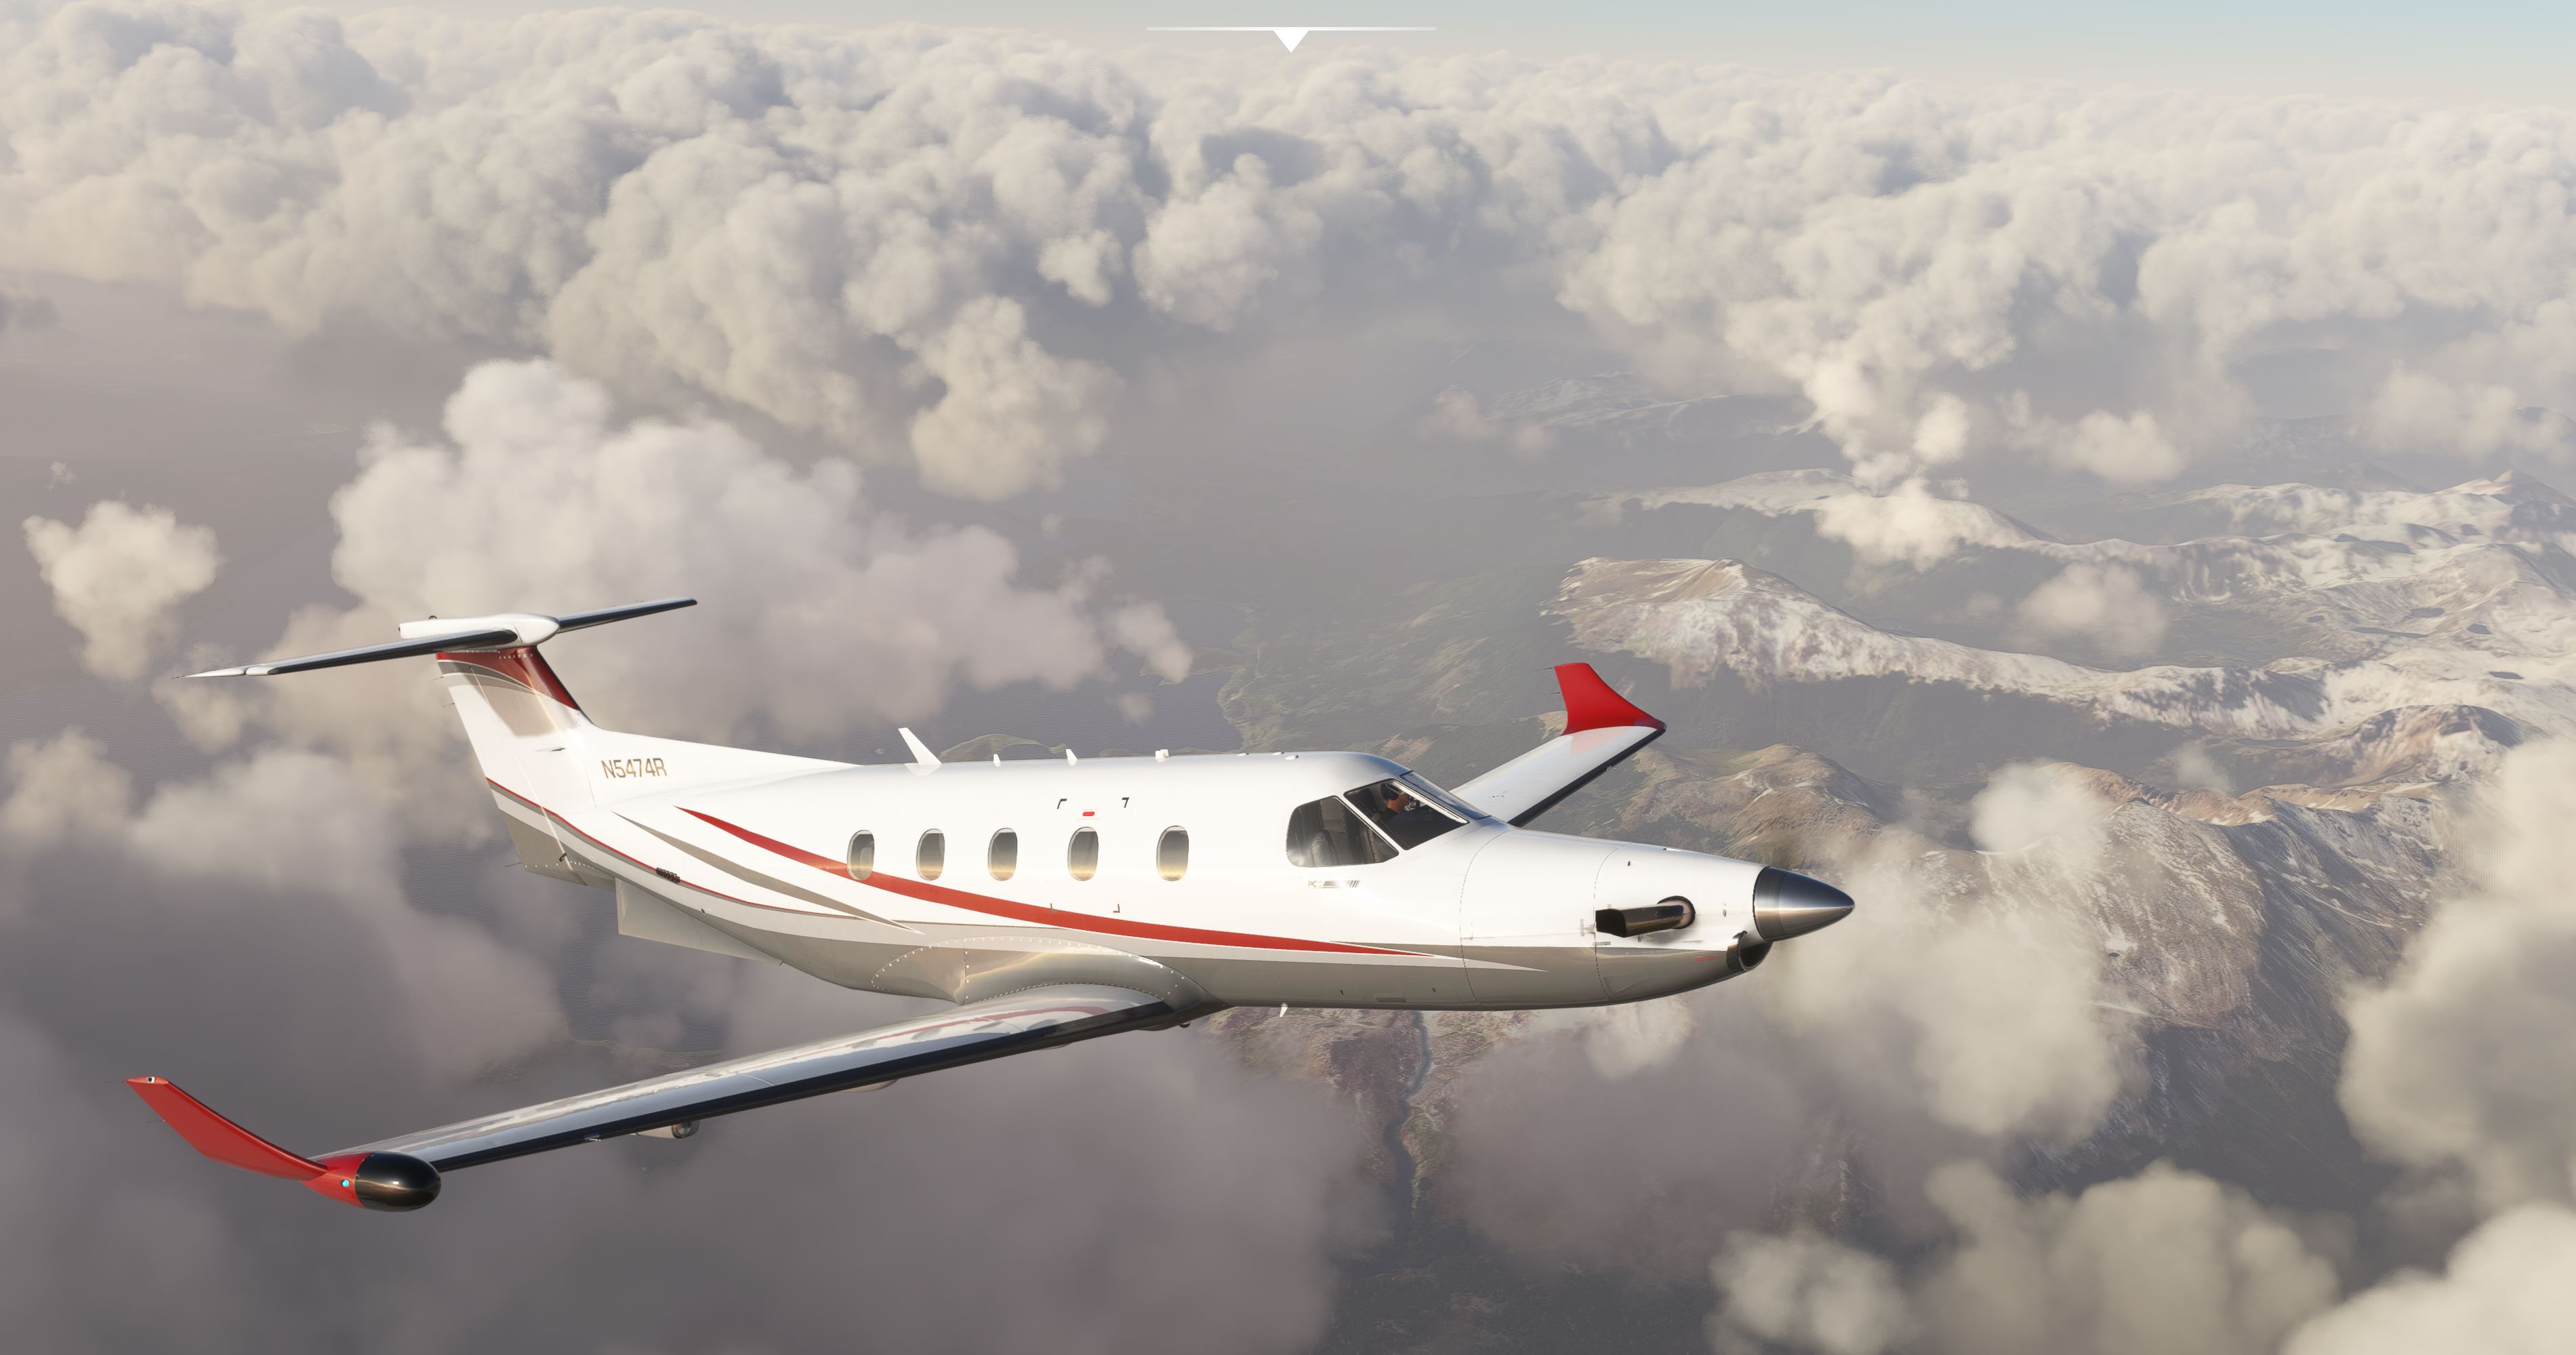 Microsoft Flight Simulator - Carenado PC12 Screenshot